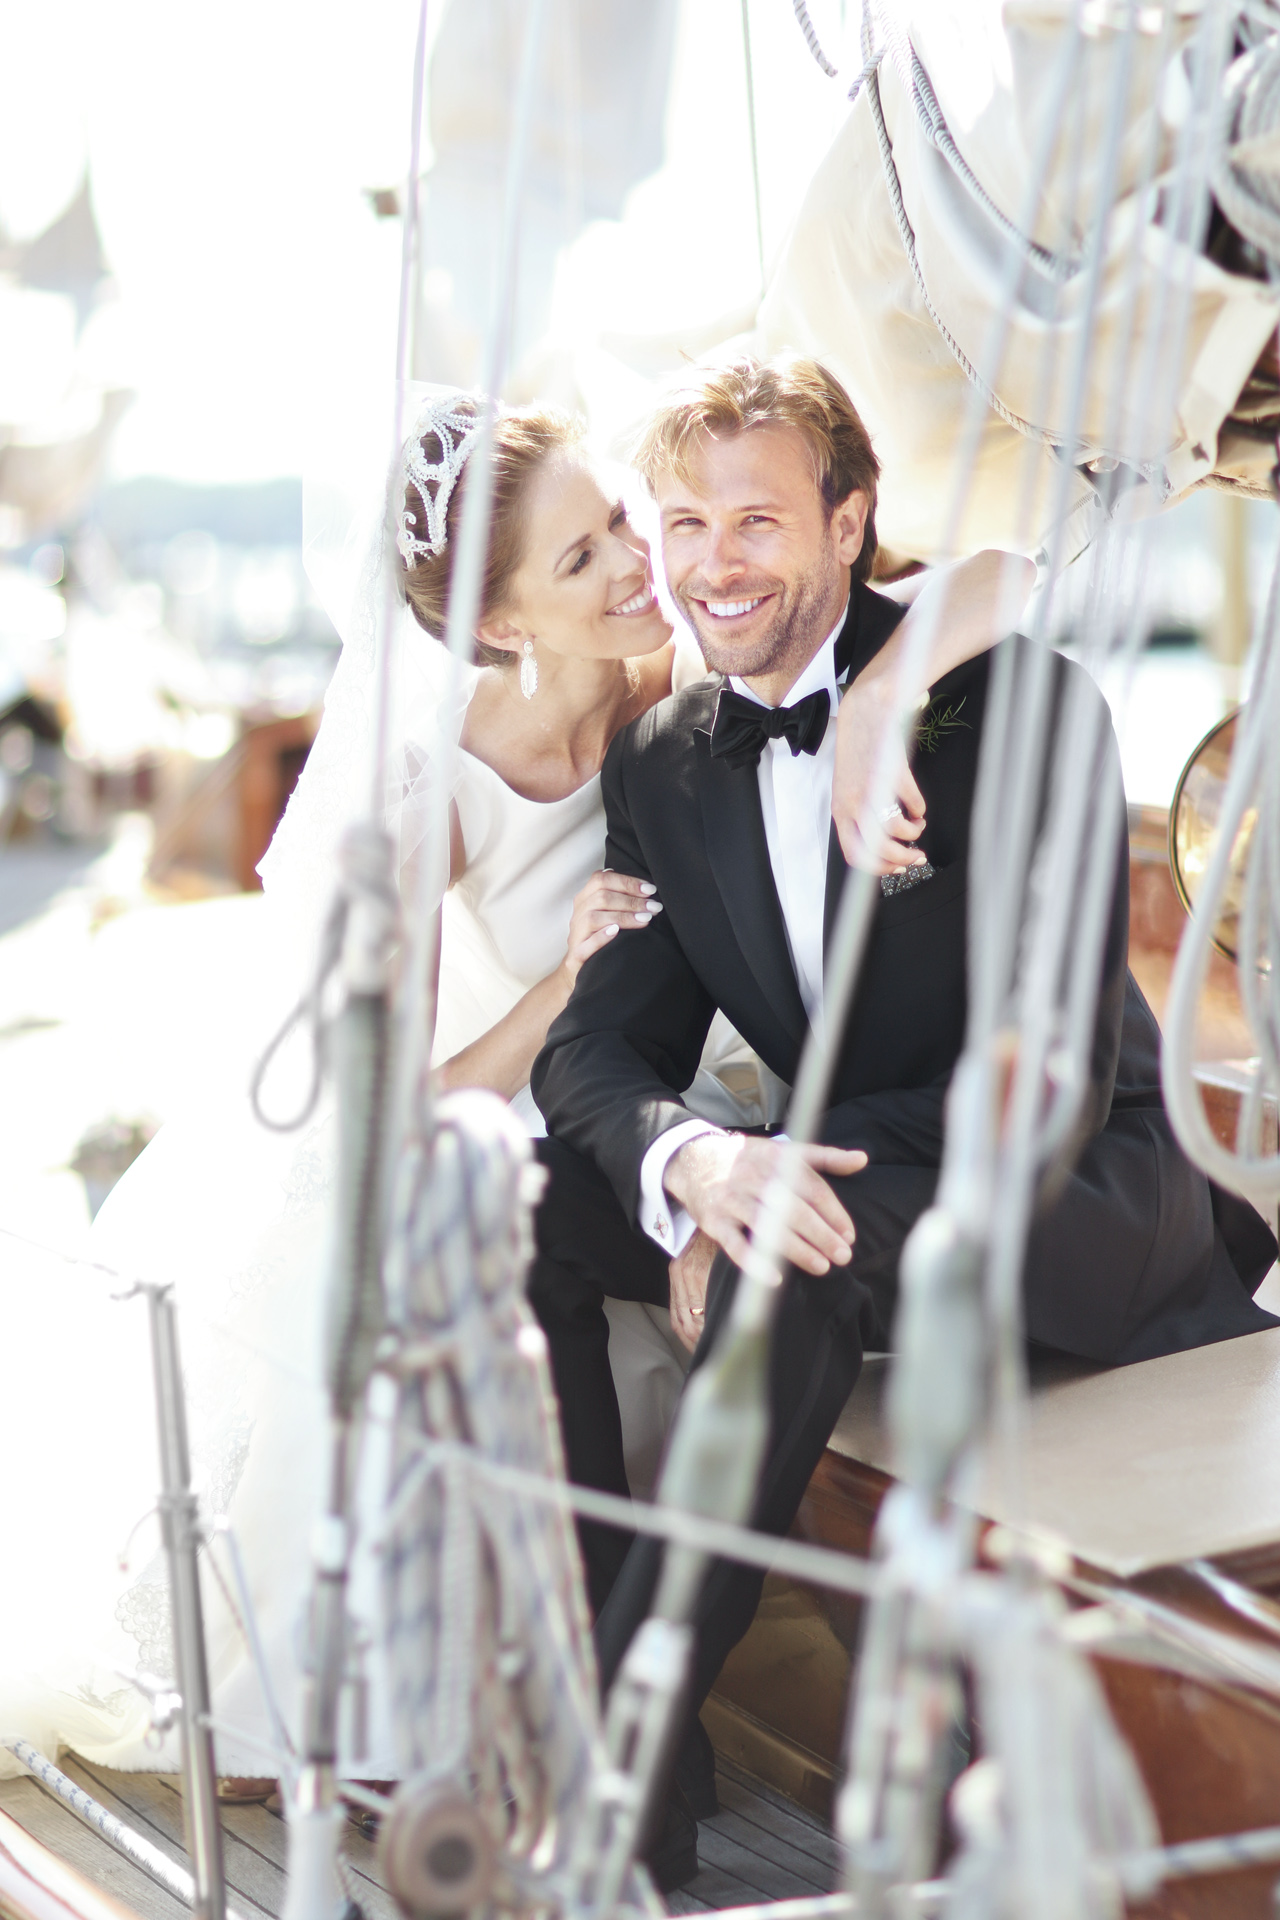 newlyweds on sailboat